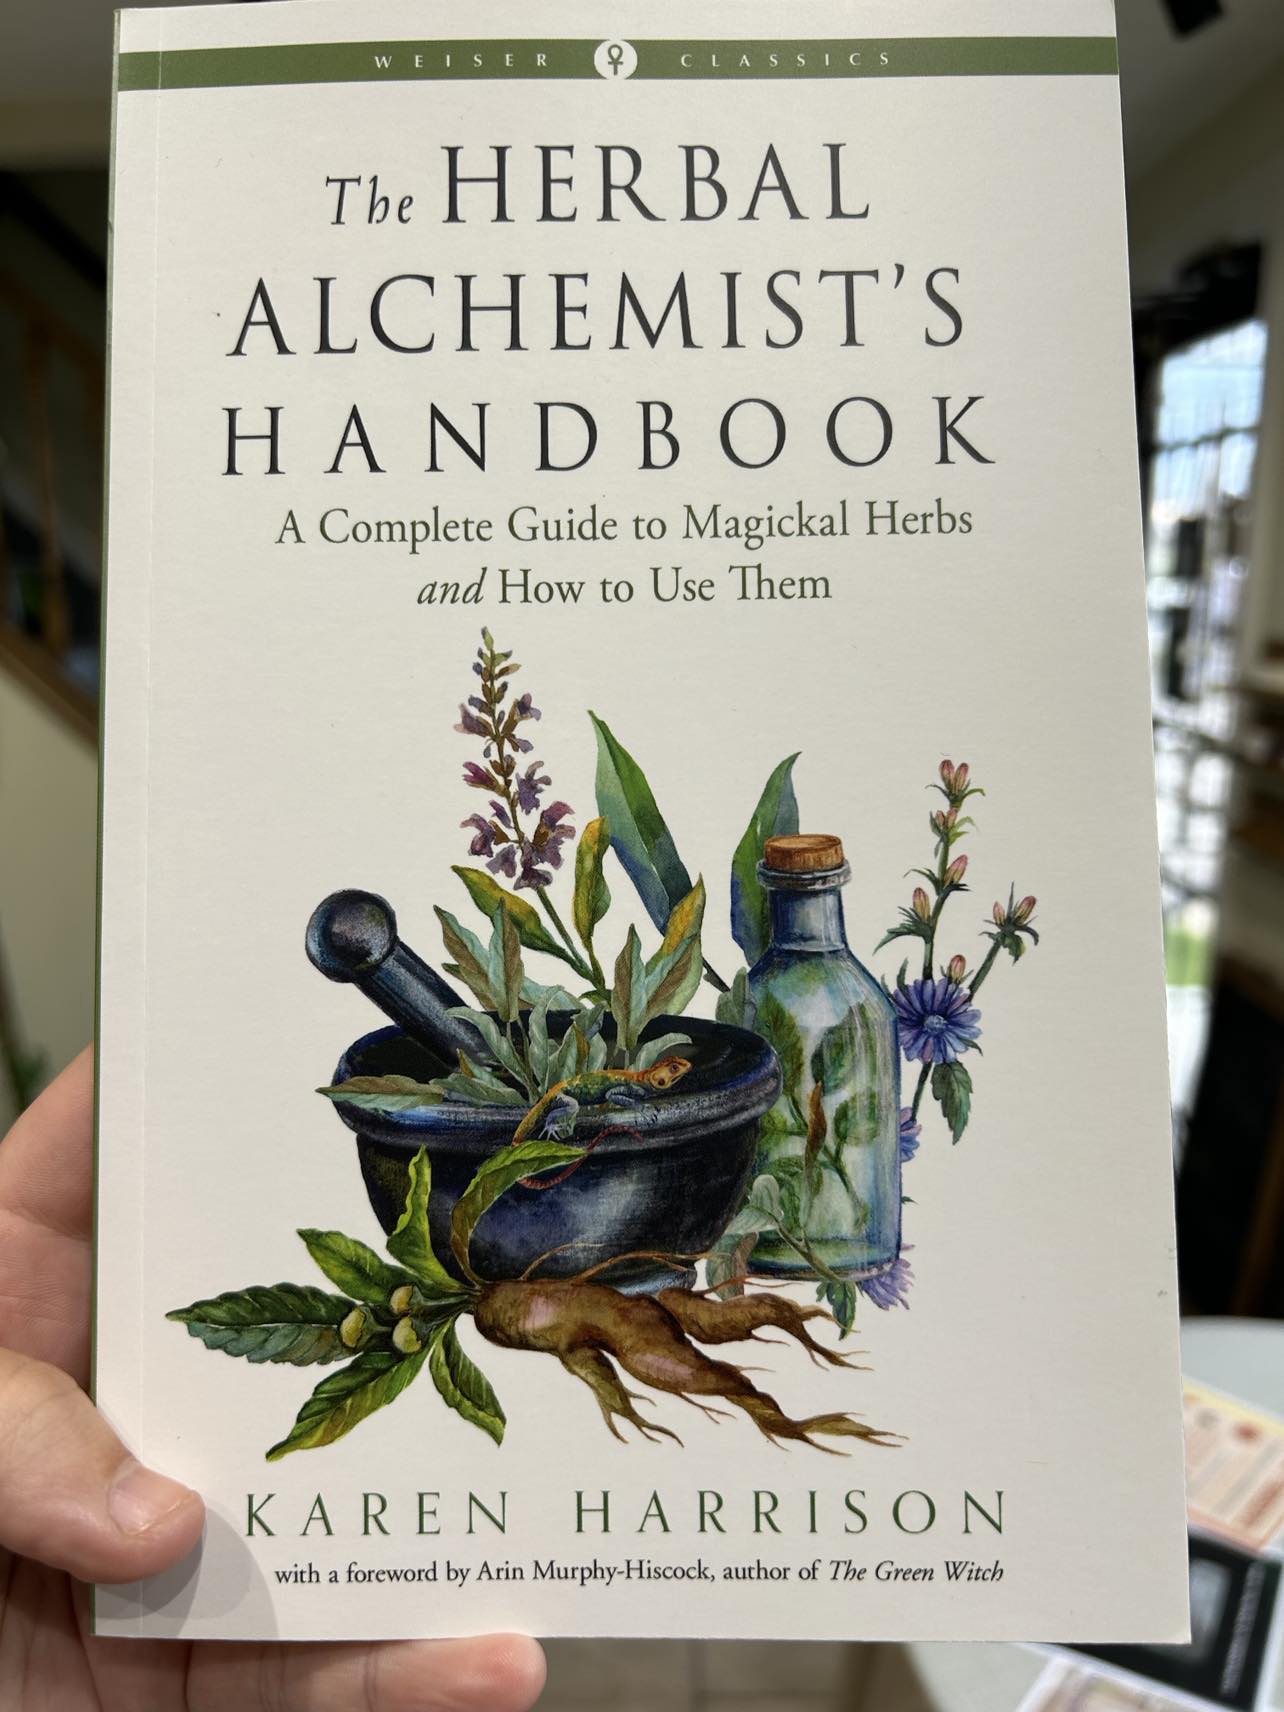 Herbal alchemist's handbook by Karen Harrison